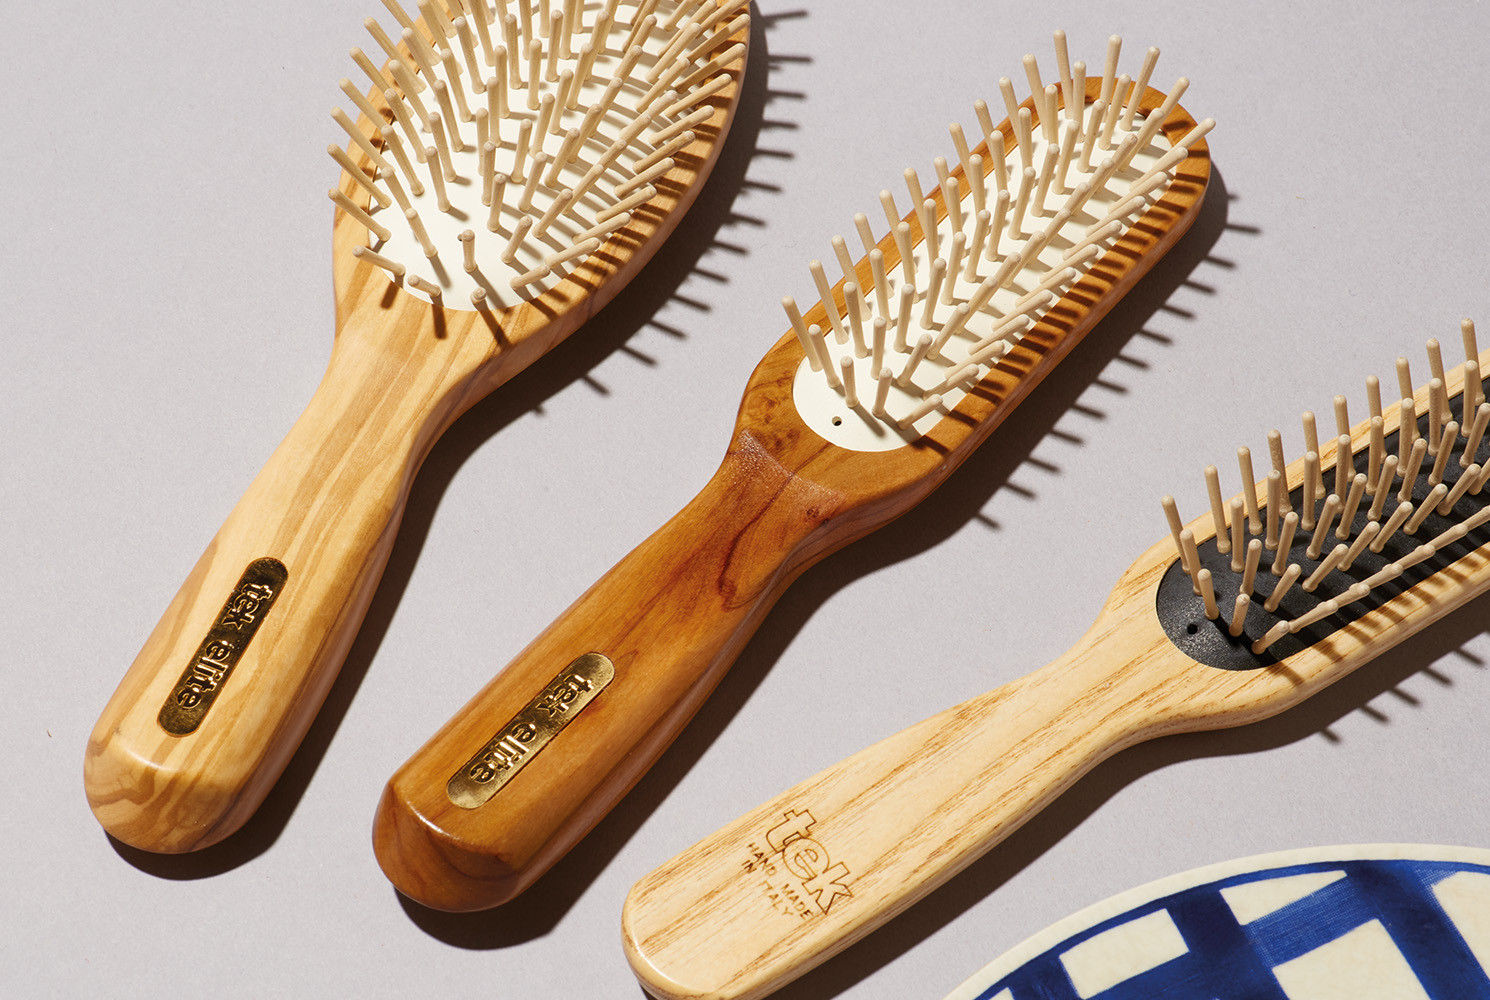 Les brosses à cheveux en bois, leurs bénéfices sur la santé du cheveu. -  Beliflor